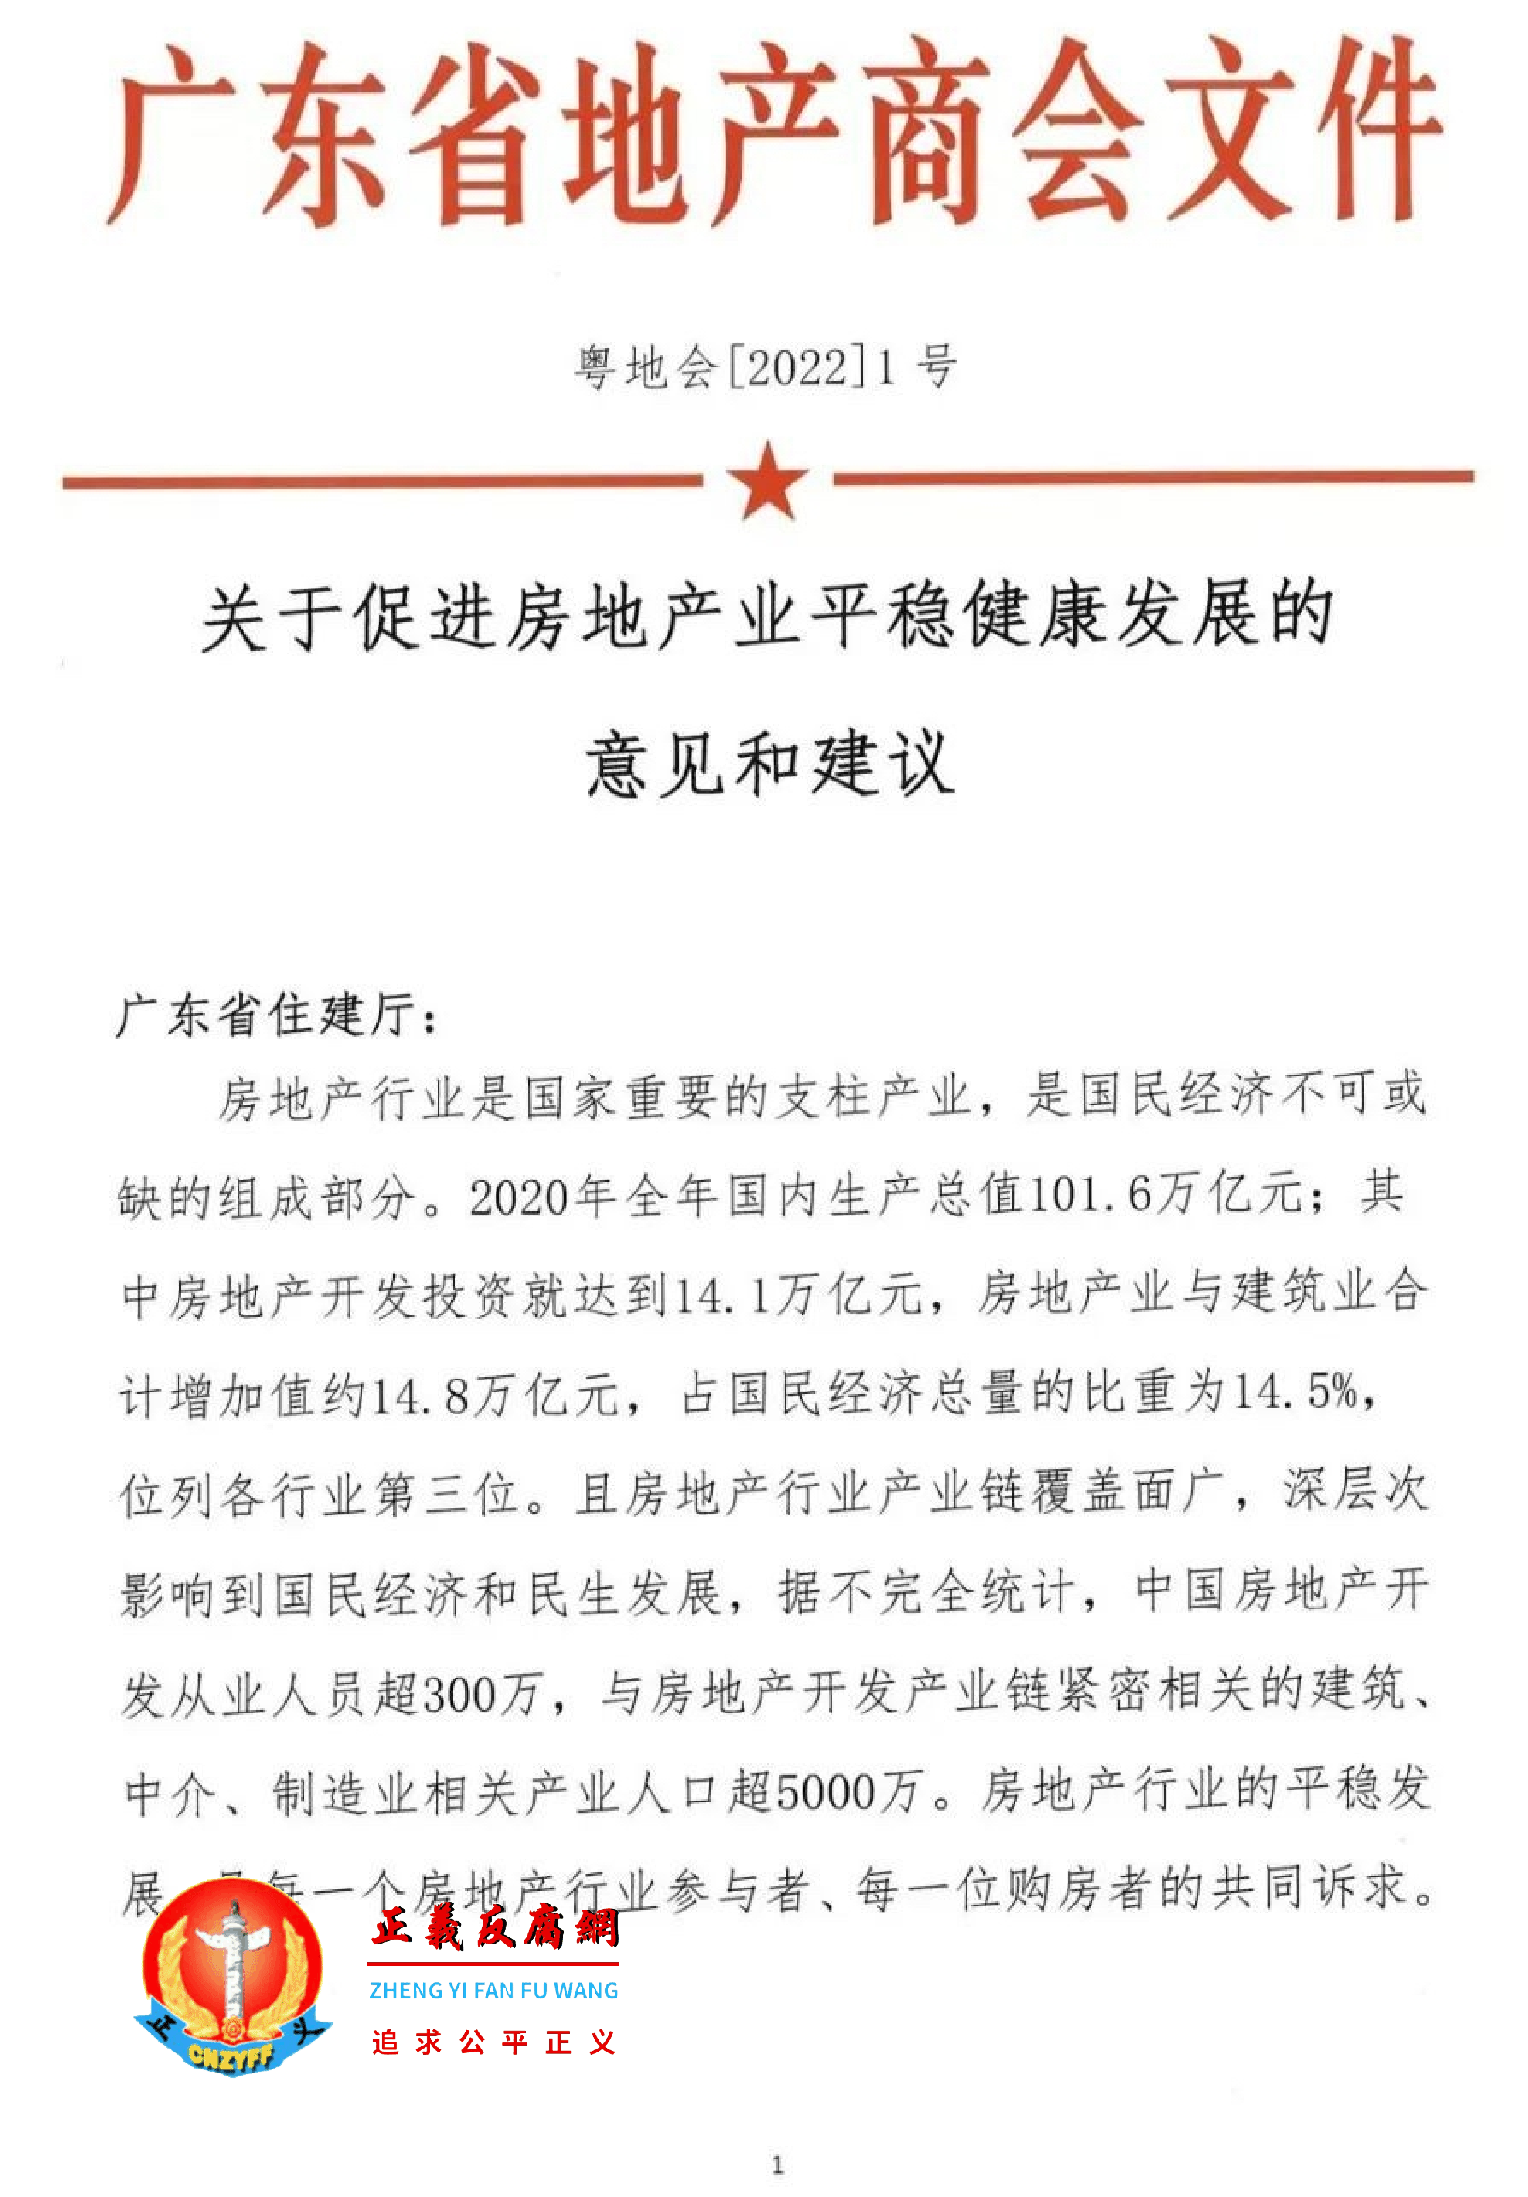 2022年6月6日，广东省地产商会向省住建厅递交了一份文件《关于促进房地产业平稳健康发展的意见和建议》粵地会〔2021〕1号.png